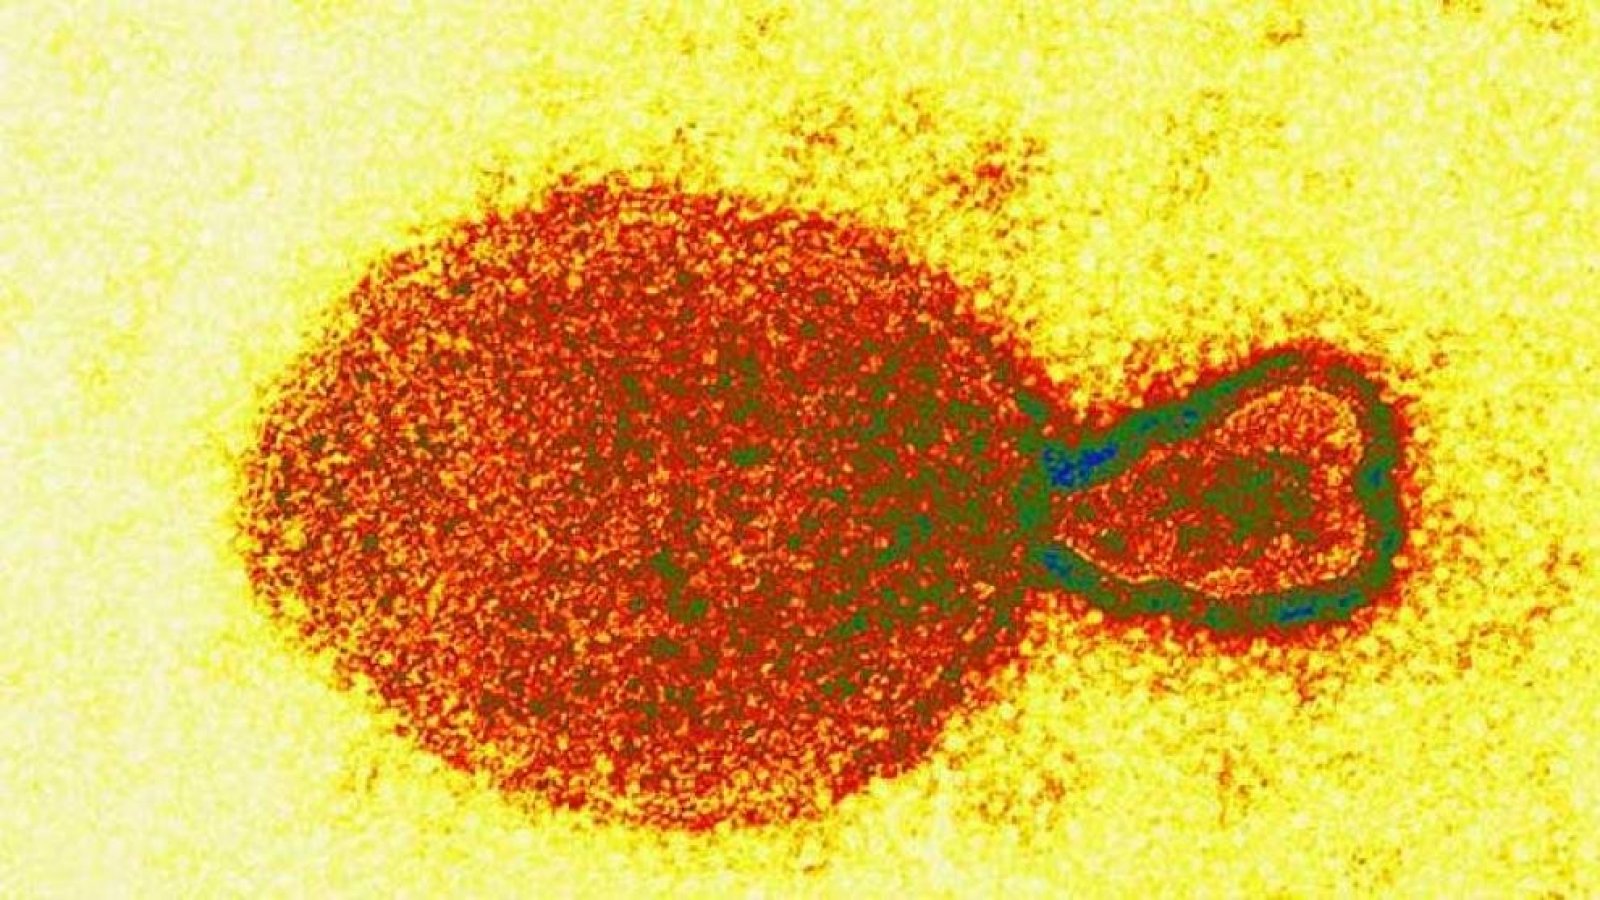 El nuevo virus descubierto en China afectó al menos a 35 personas